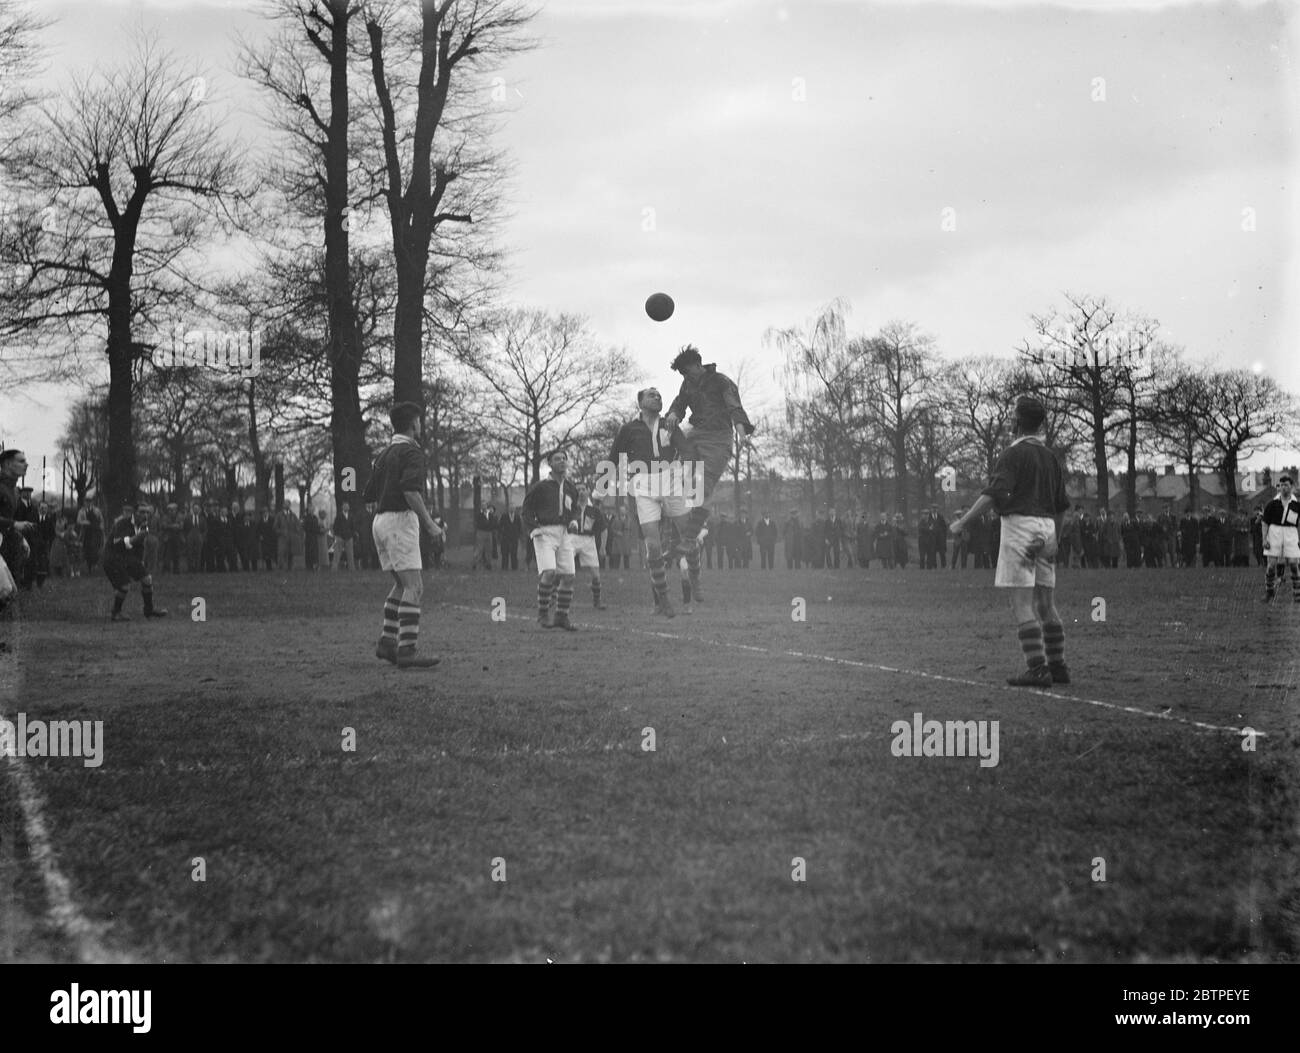 Fútbol en el parque Longlands. Dos jugadores compiten por la pelota en el aire. 1936 Foto de stock